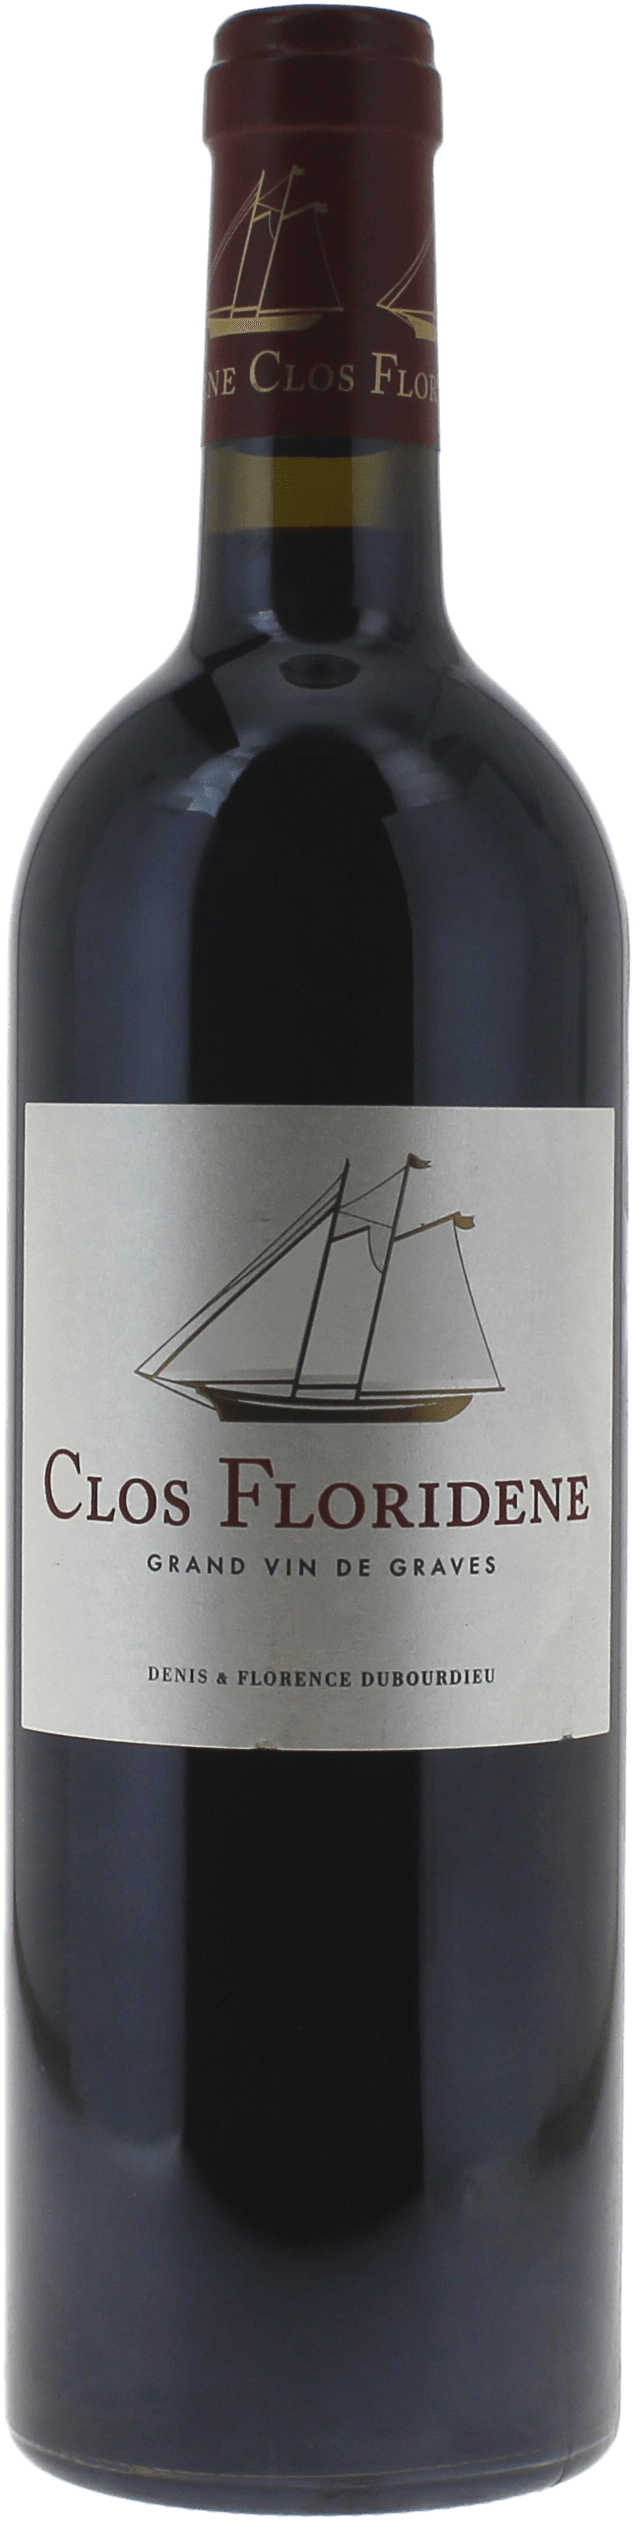 Clos floridne rouge 2017  Graves, Bordeaux rouge